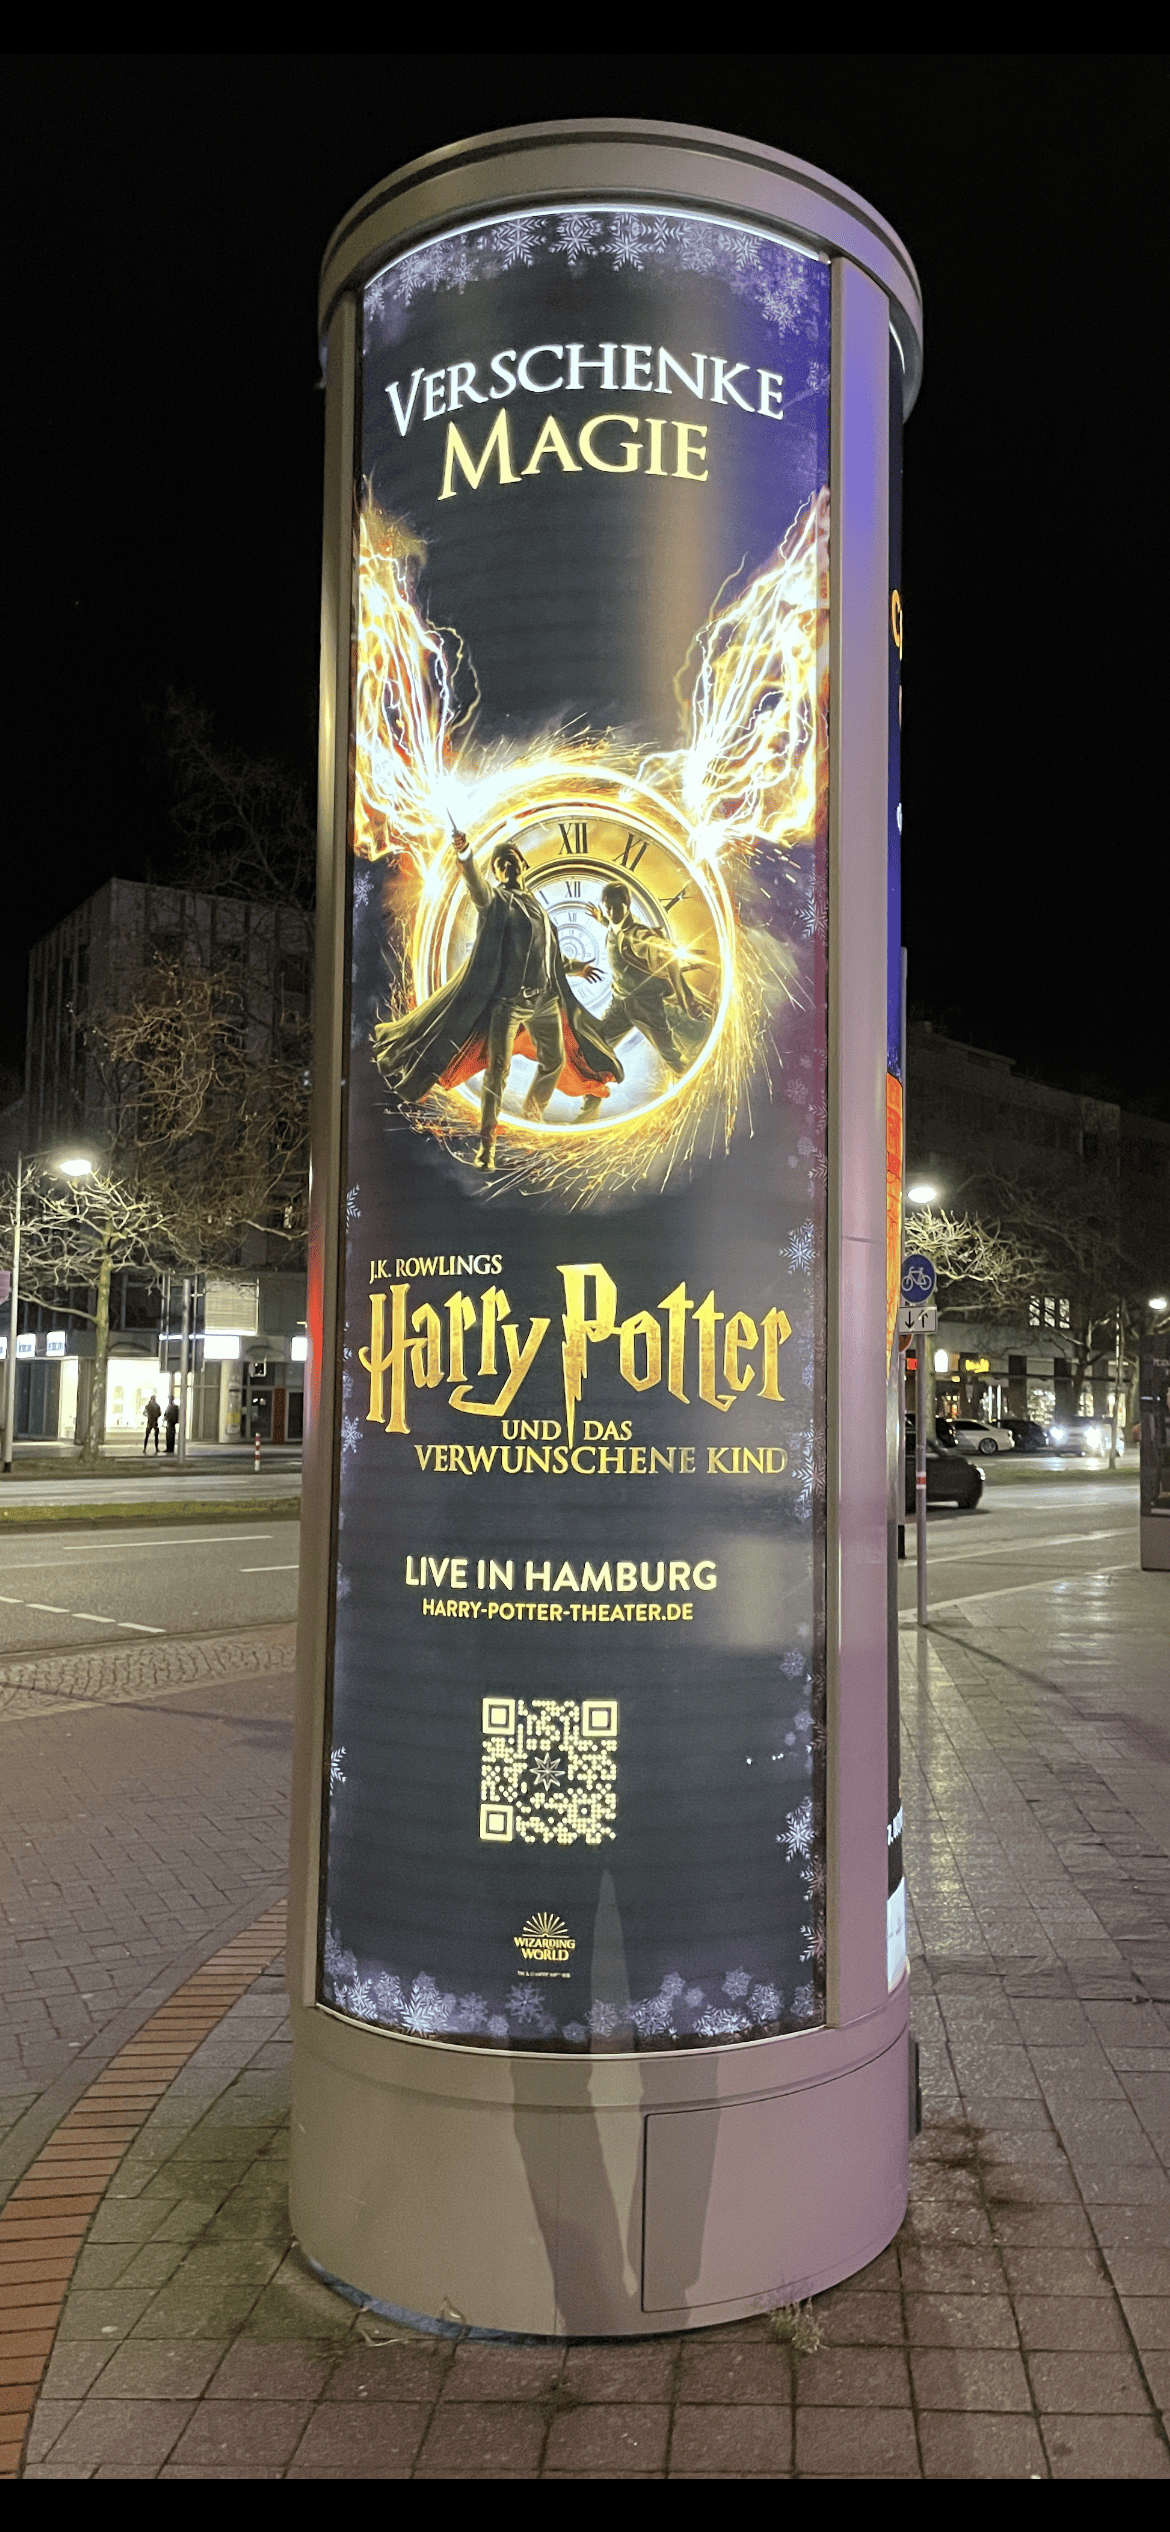 Eine weitere Litfaßsäule im Dunkeln mit leuchtender Harry Potter Theaterreklame in Hamburg.